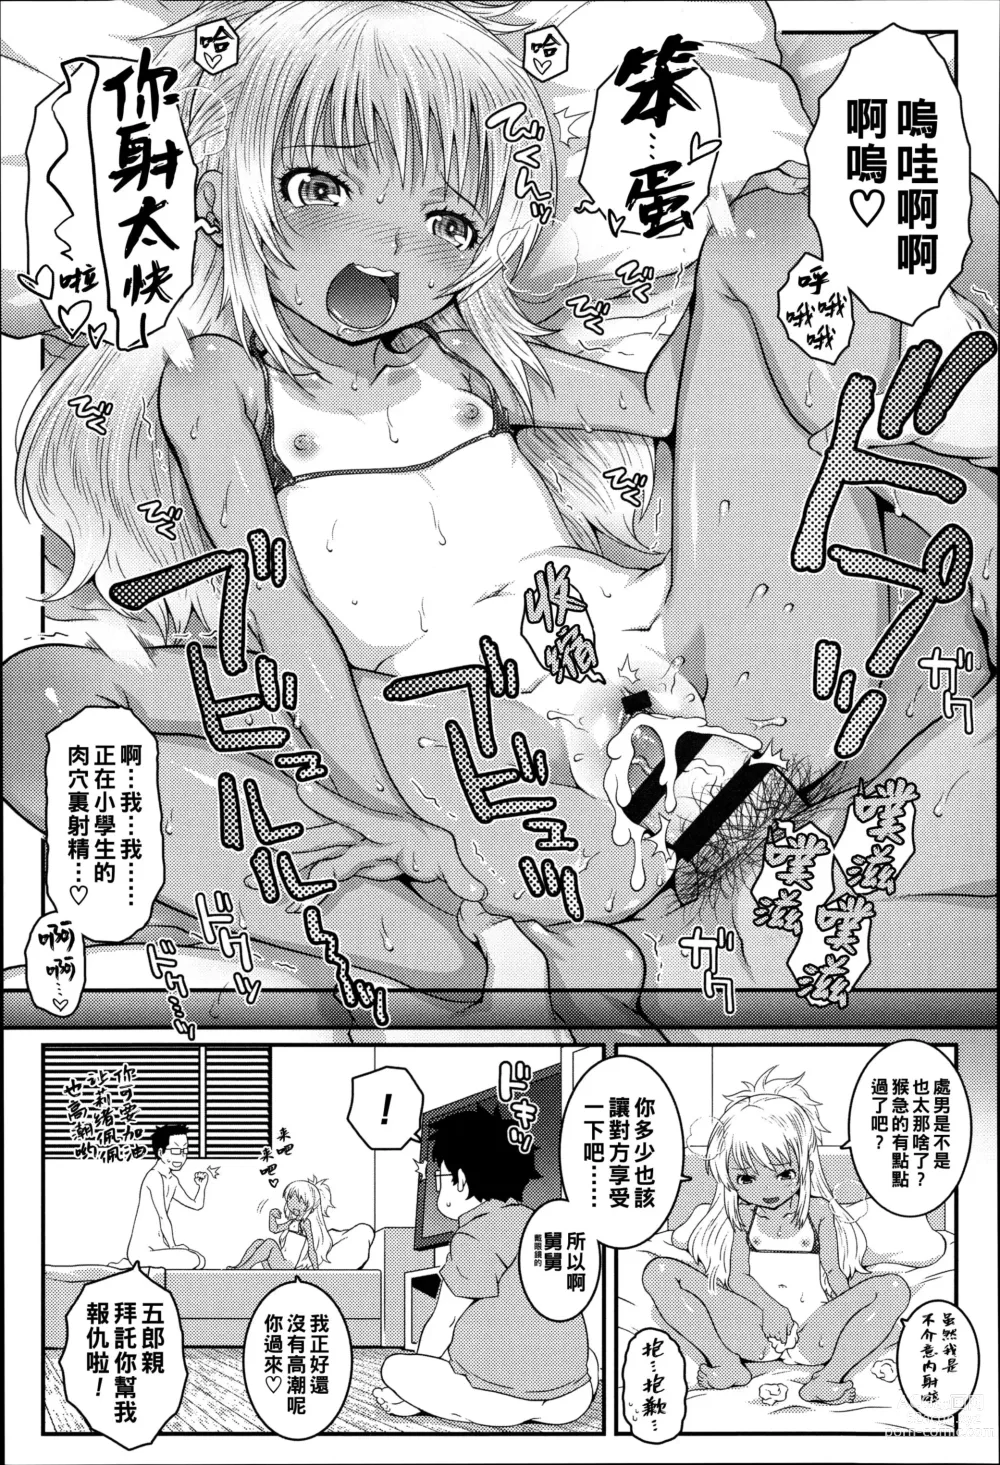 Page 13 of manga Bitch!!